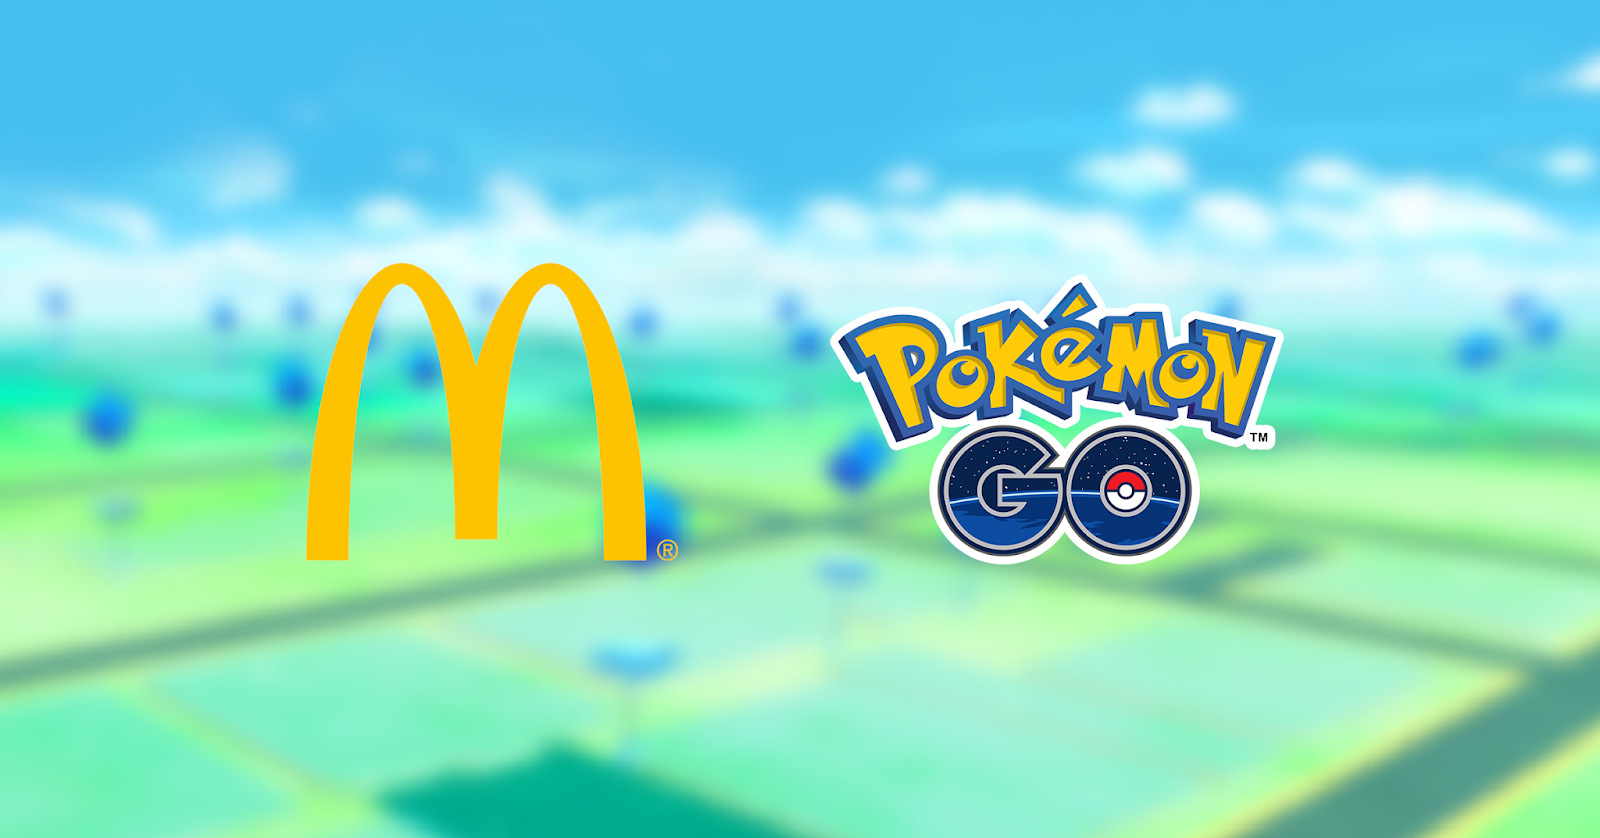 Pokémon GO (Mobile) anuncia parceria com McDonald's na América Latina